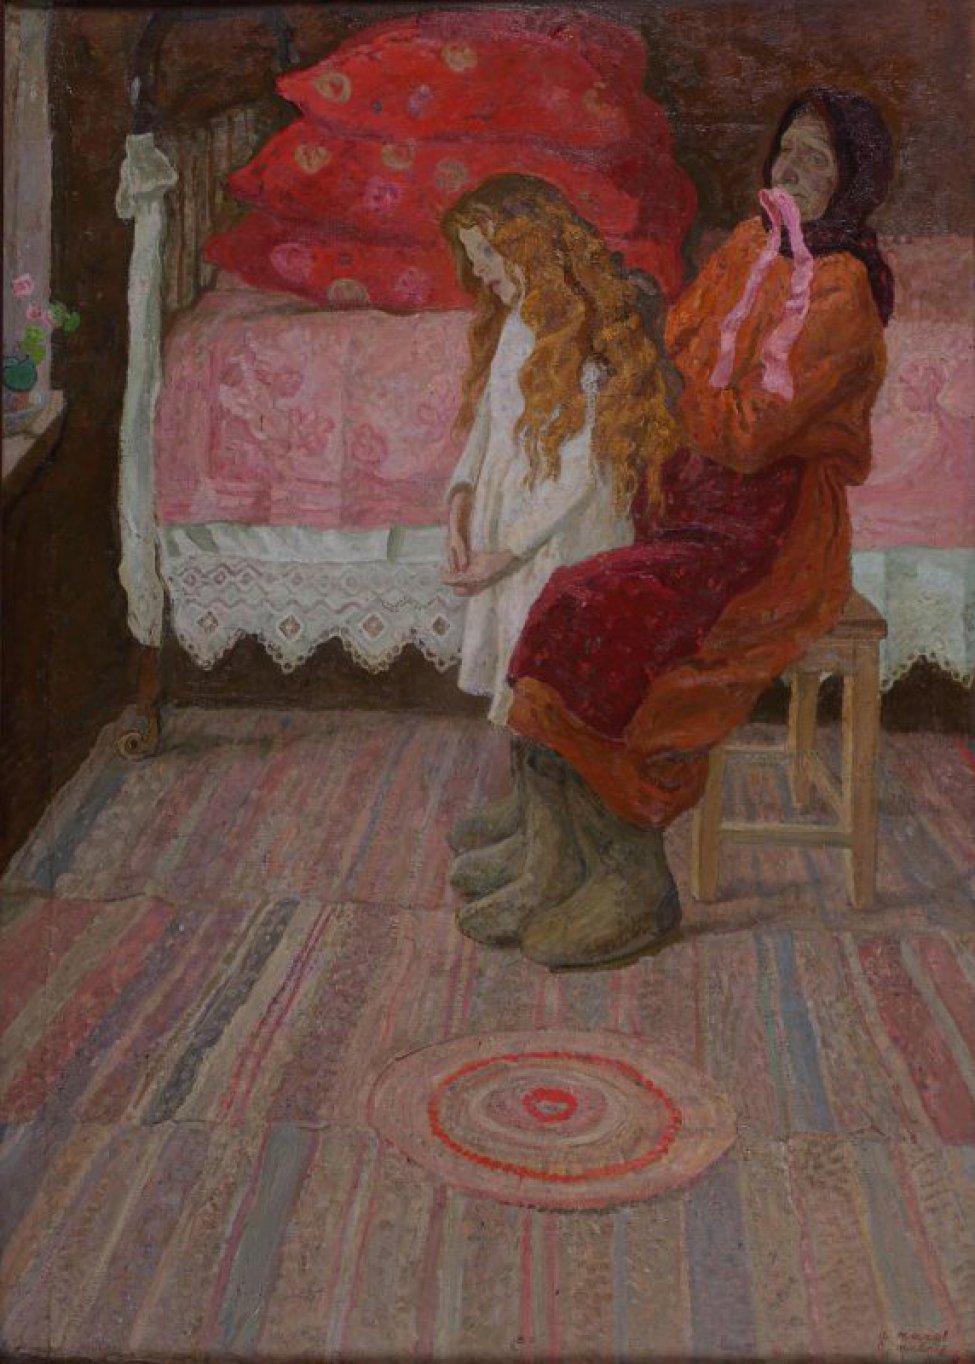 Крестьянская изба. На фоне кровати, покрытой розовым покрывалом, из под которого виден подзор, сидит старушка, в подшитых серых валенках. Около нее девочка с распущенными рыжими волосами. Старушка во рту держит розовую ленту.